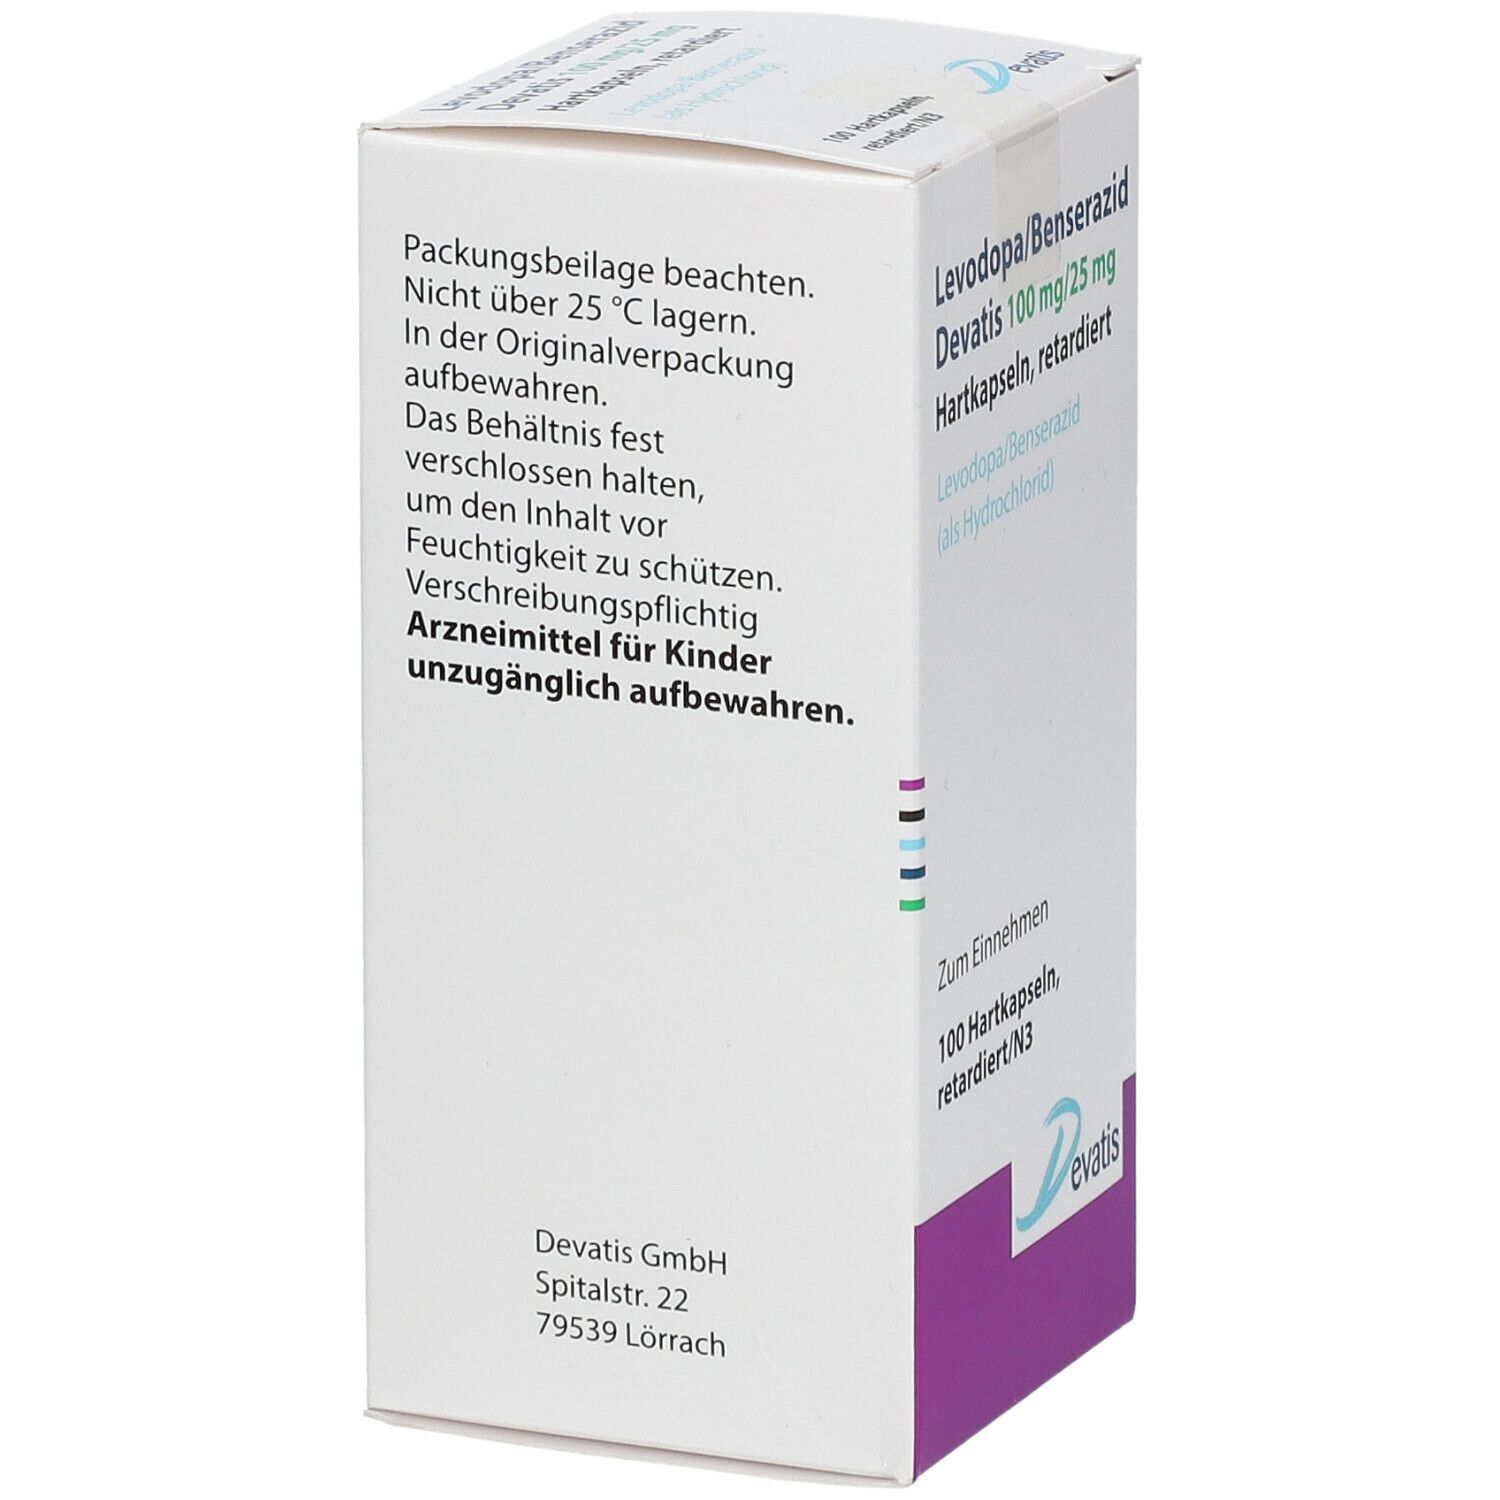 Levodopa/Benserazid Devatis 100 mg/25 mg